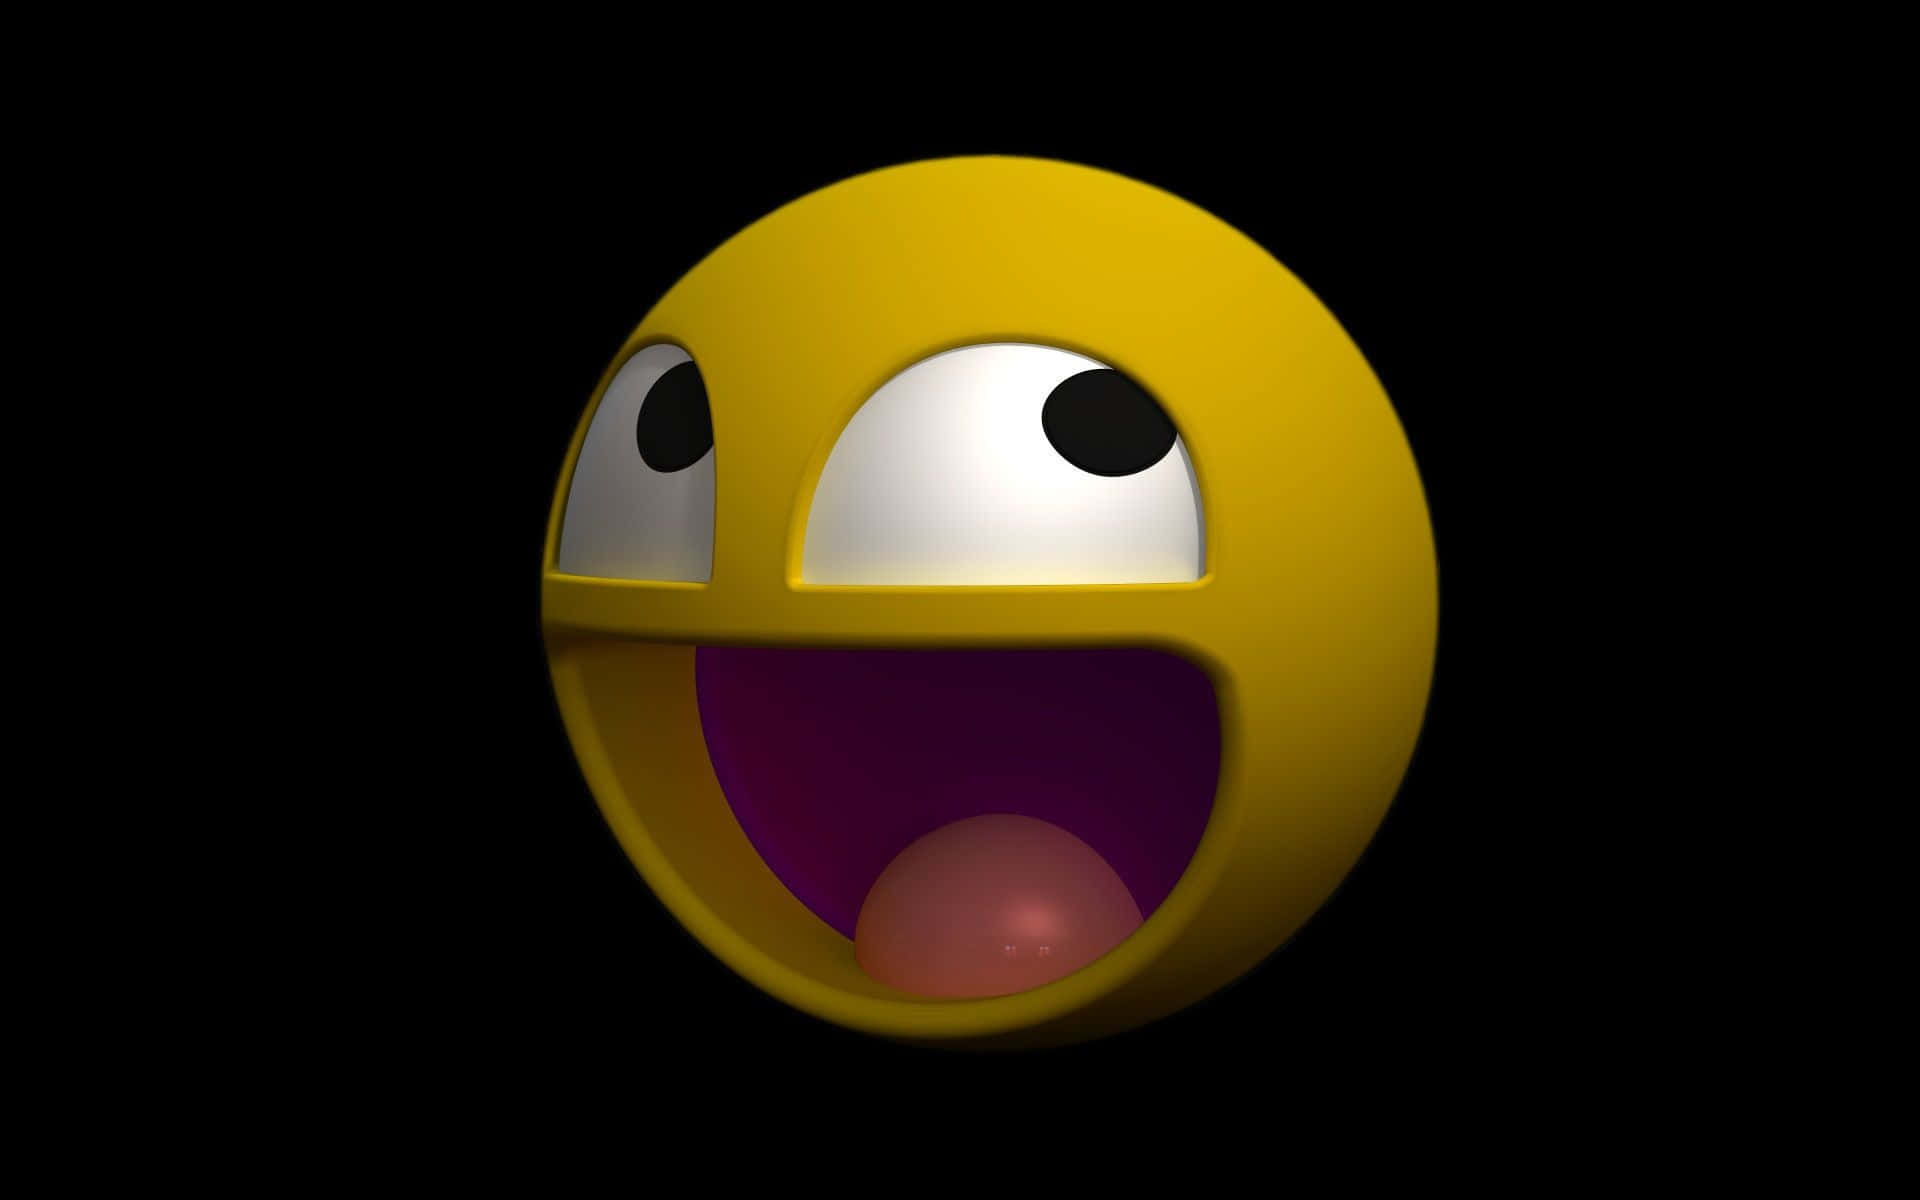 Papelde Parede Em 3d Do Emoji De Rosto Engraçado. Papel de Parede